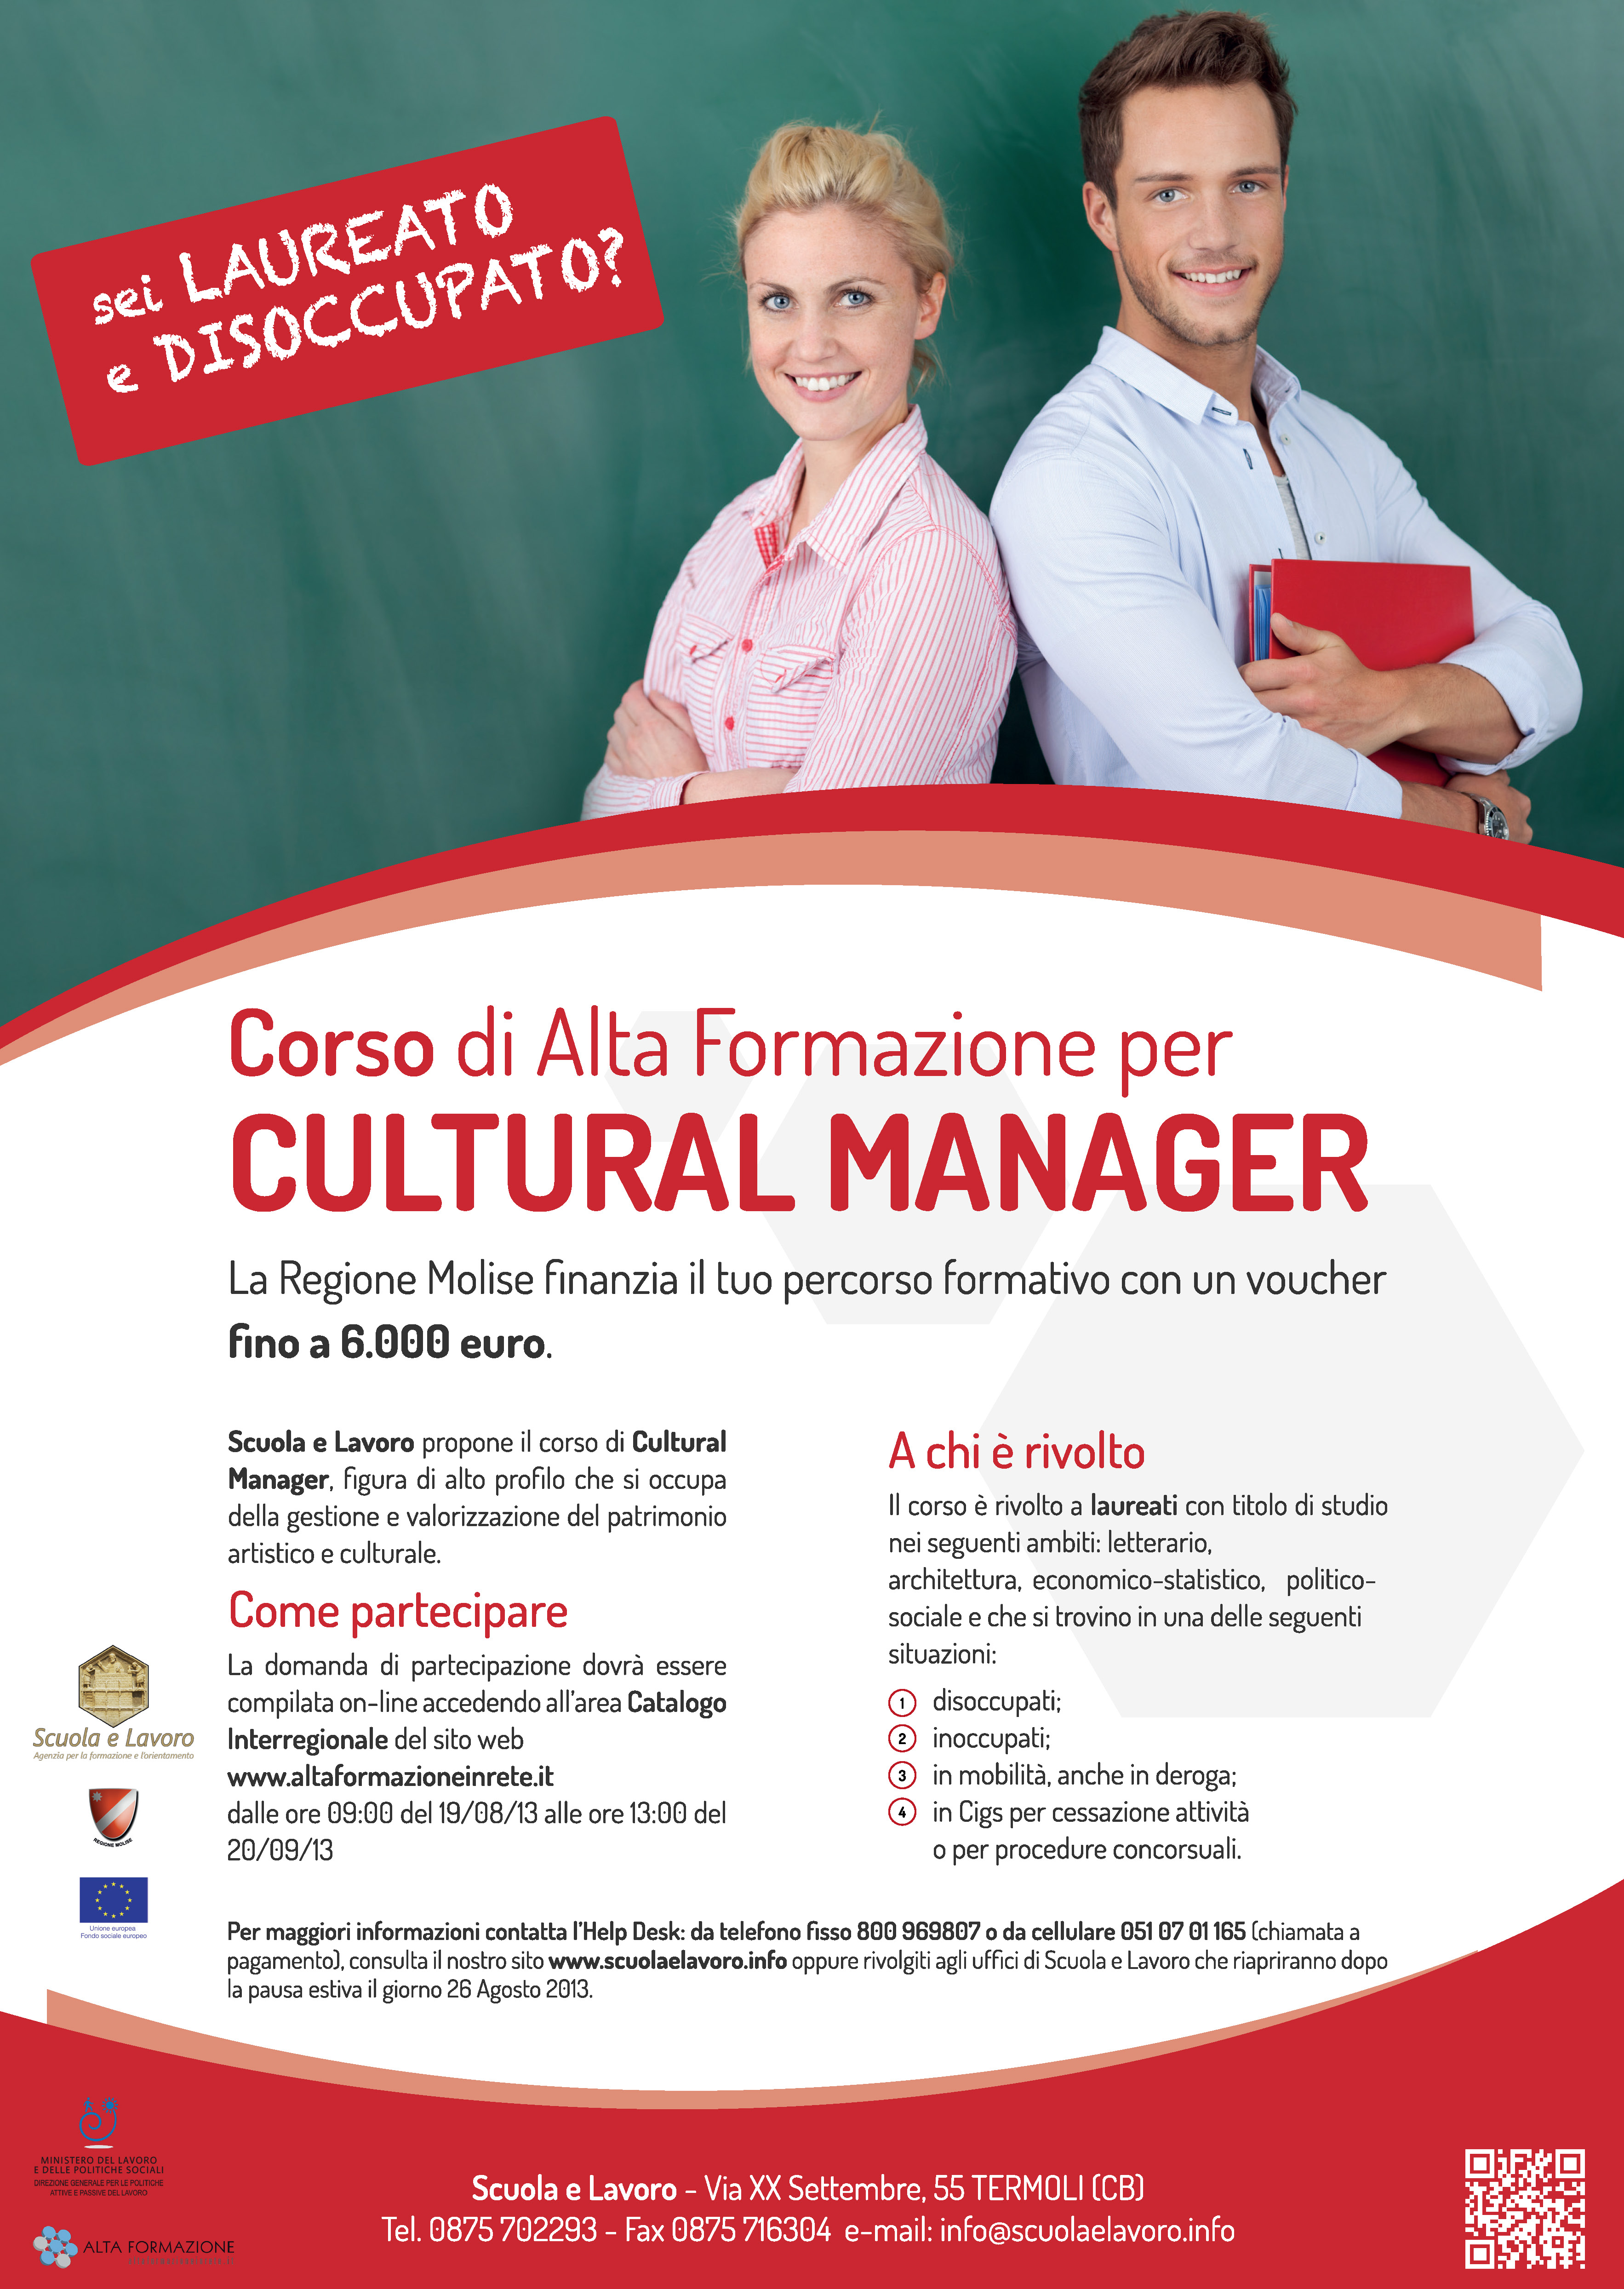 Corso di Alta Formazione in Cultural Manager 2013